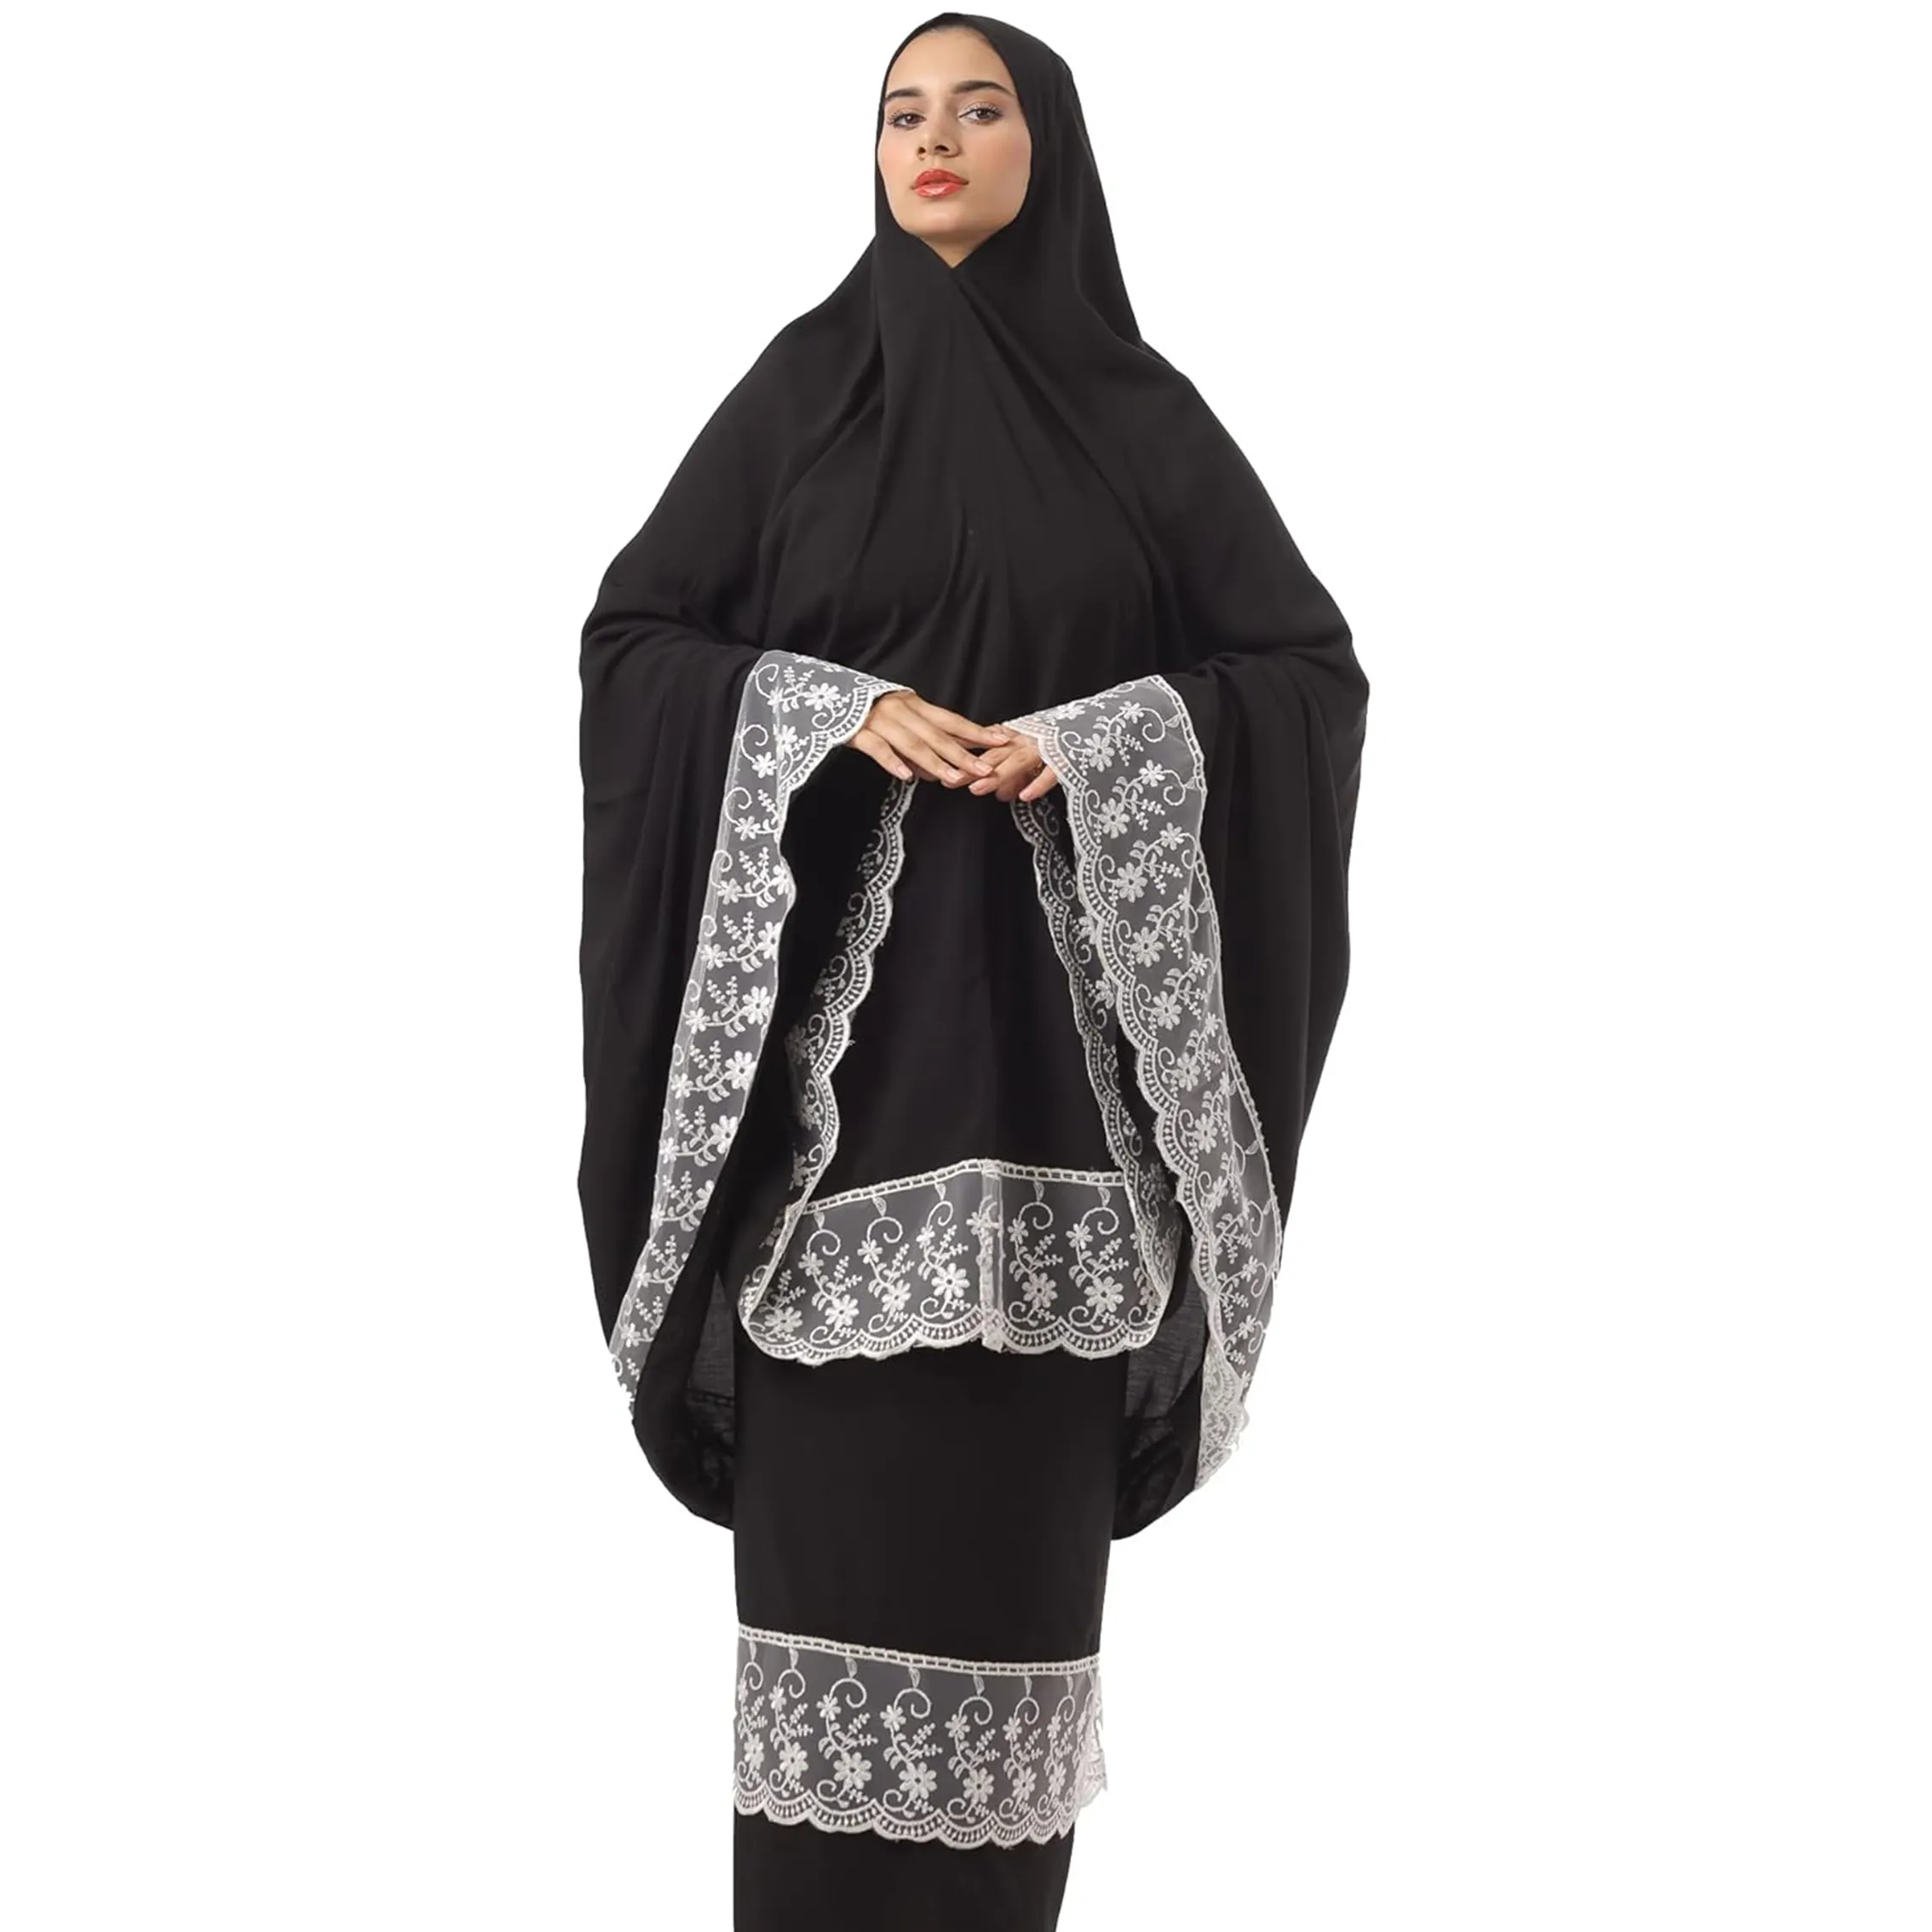 Abito musulmano in due pezzi 3076 per la preghiera islamica-comodo ed elegante abito da preghiera nero abaya dubai Hijab